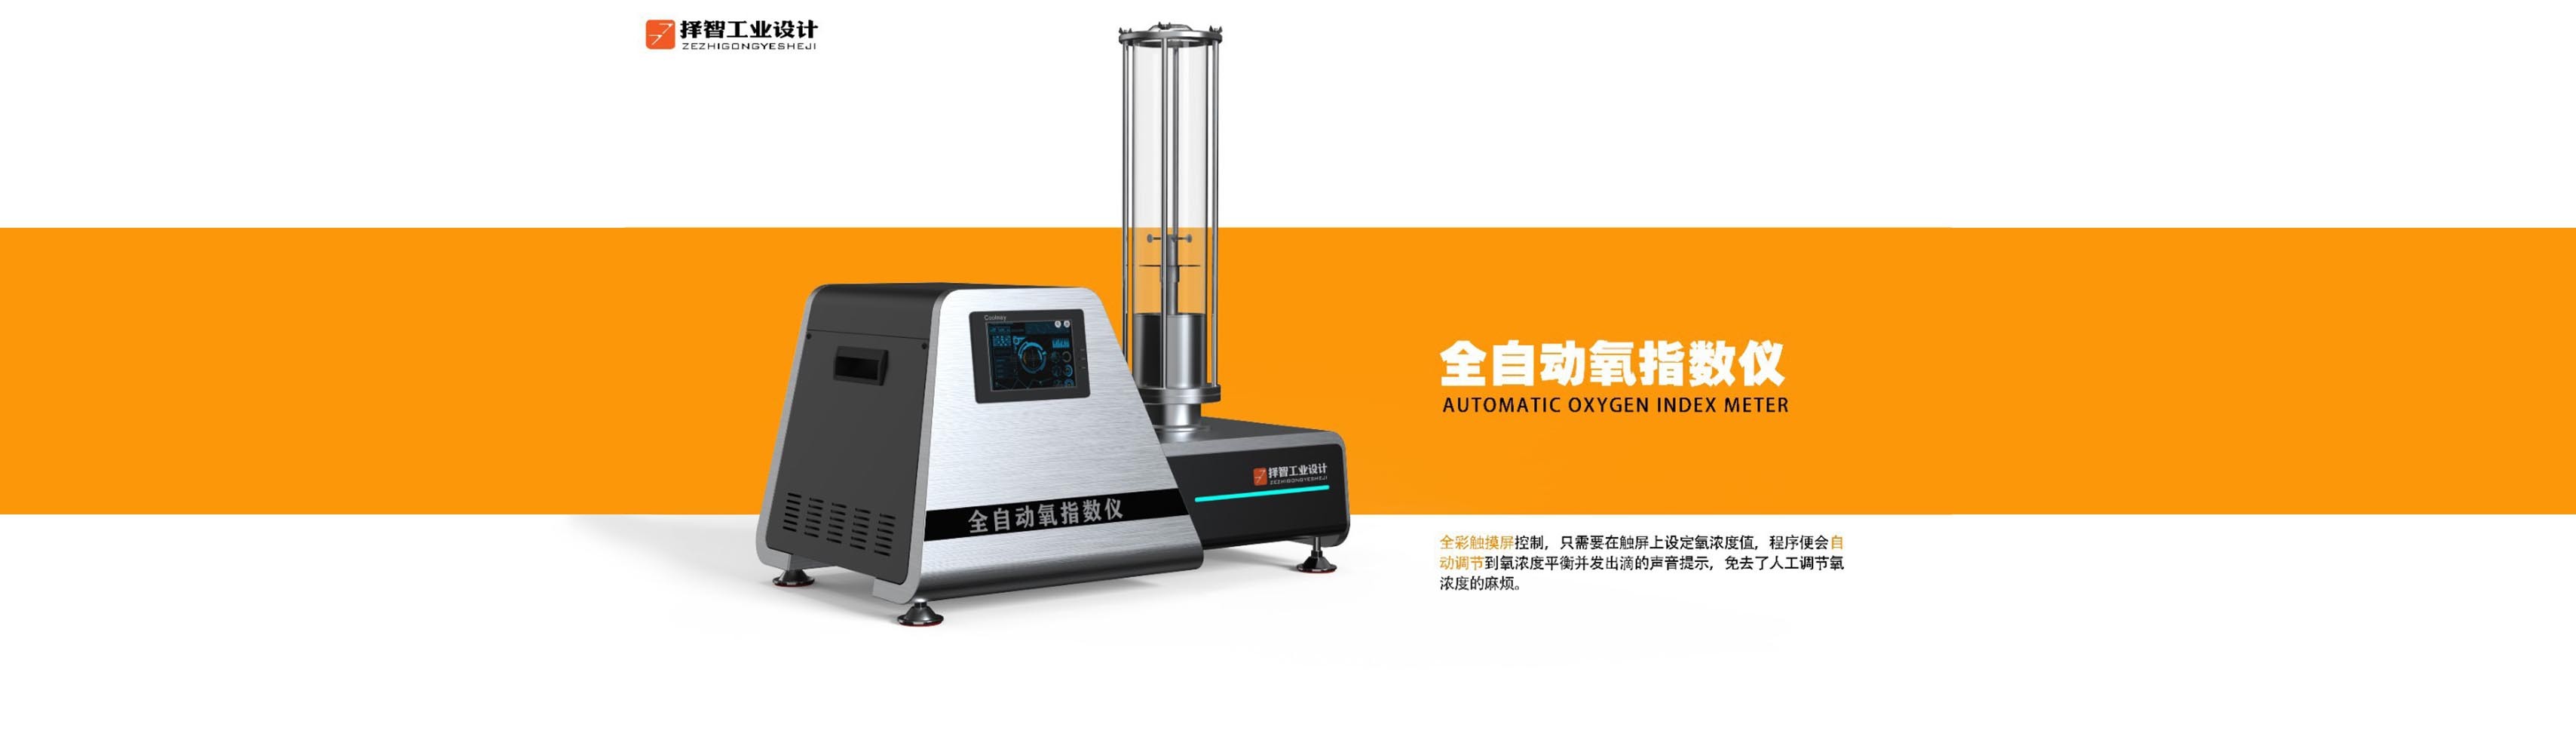 上海苏州产品设计 工业产品外观设计 结构设计 全自动氧指数仪外观设计